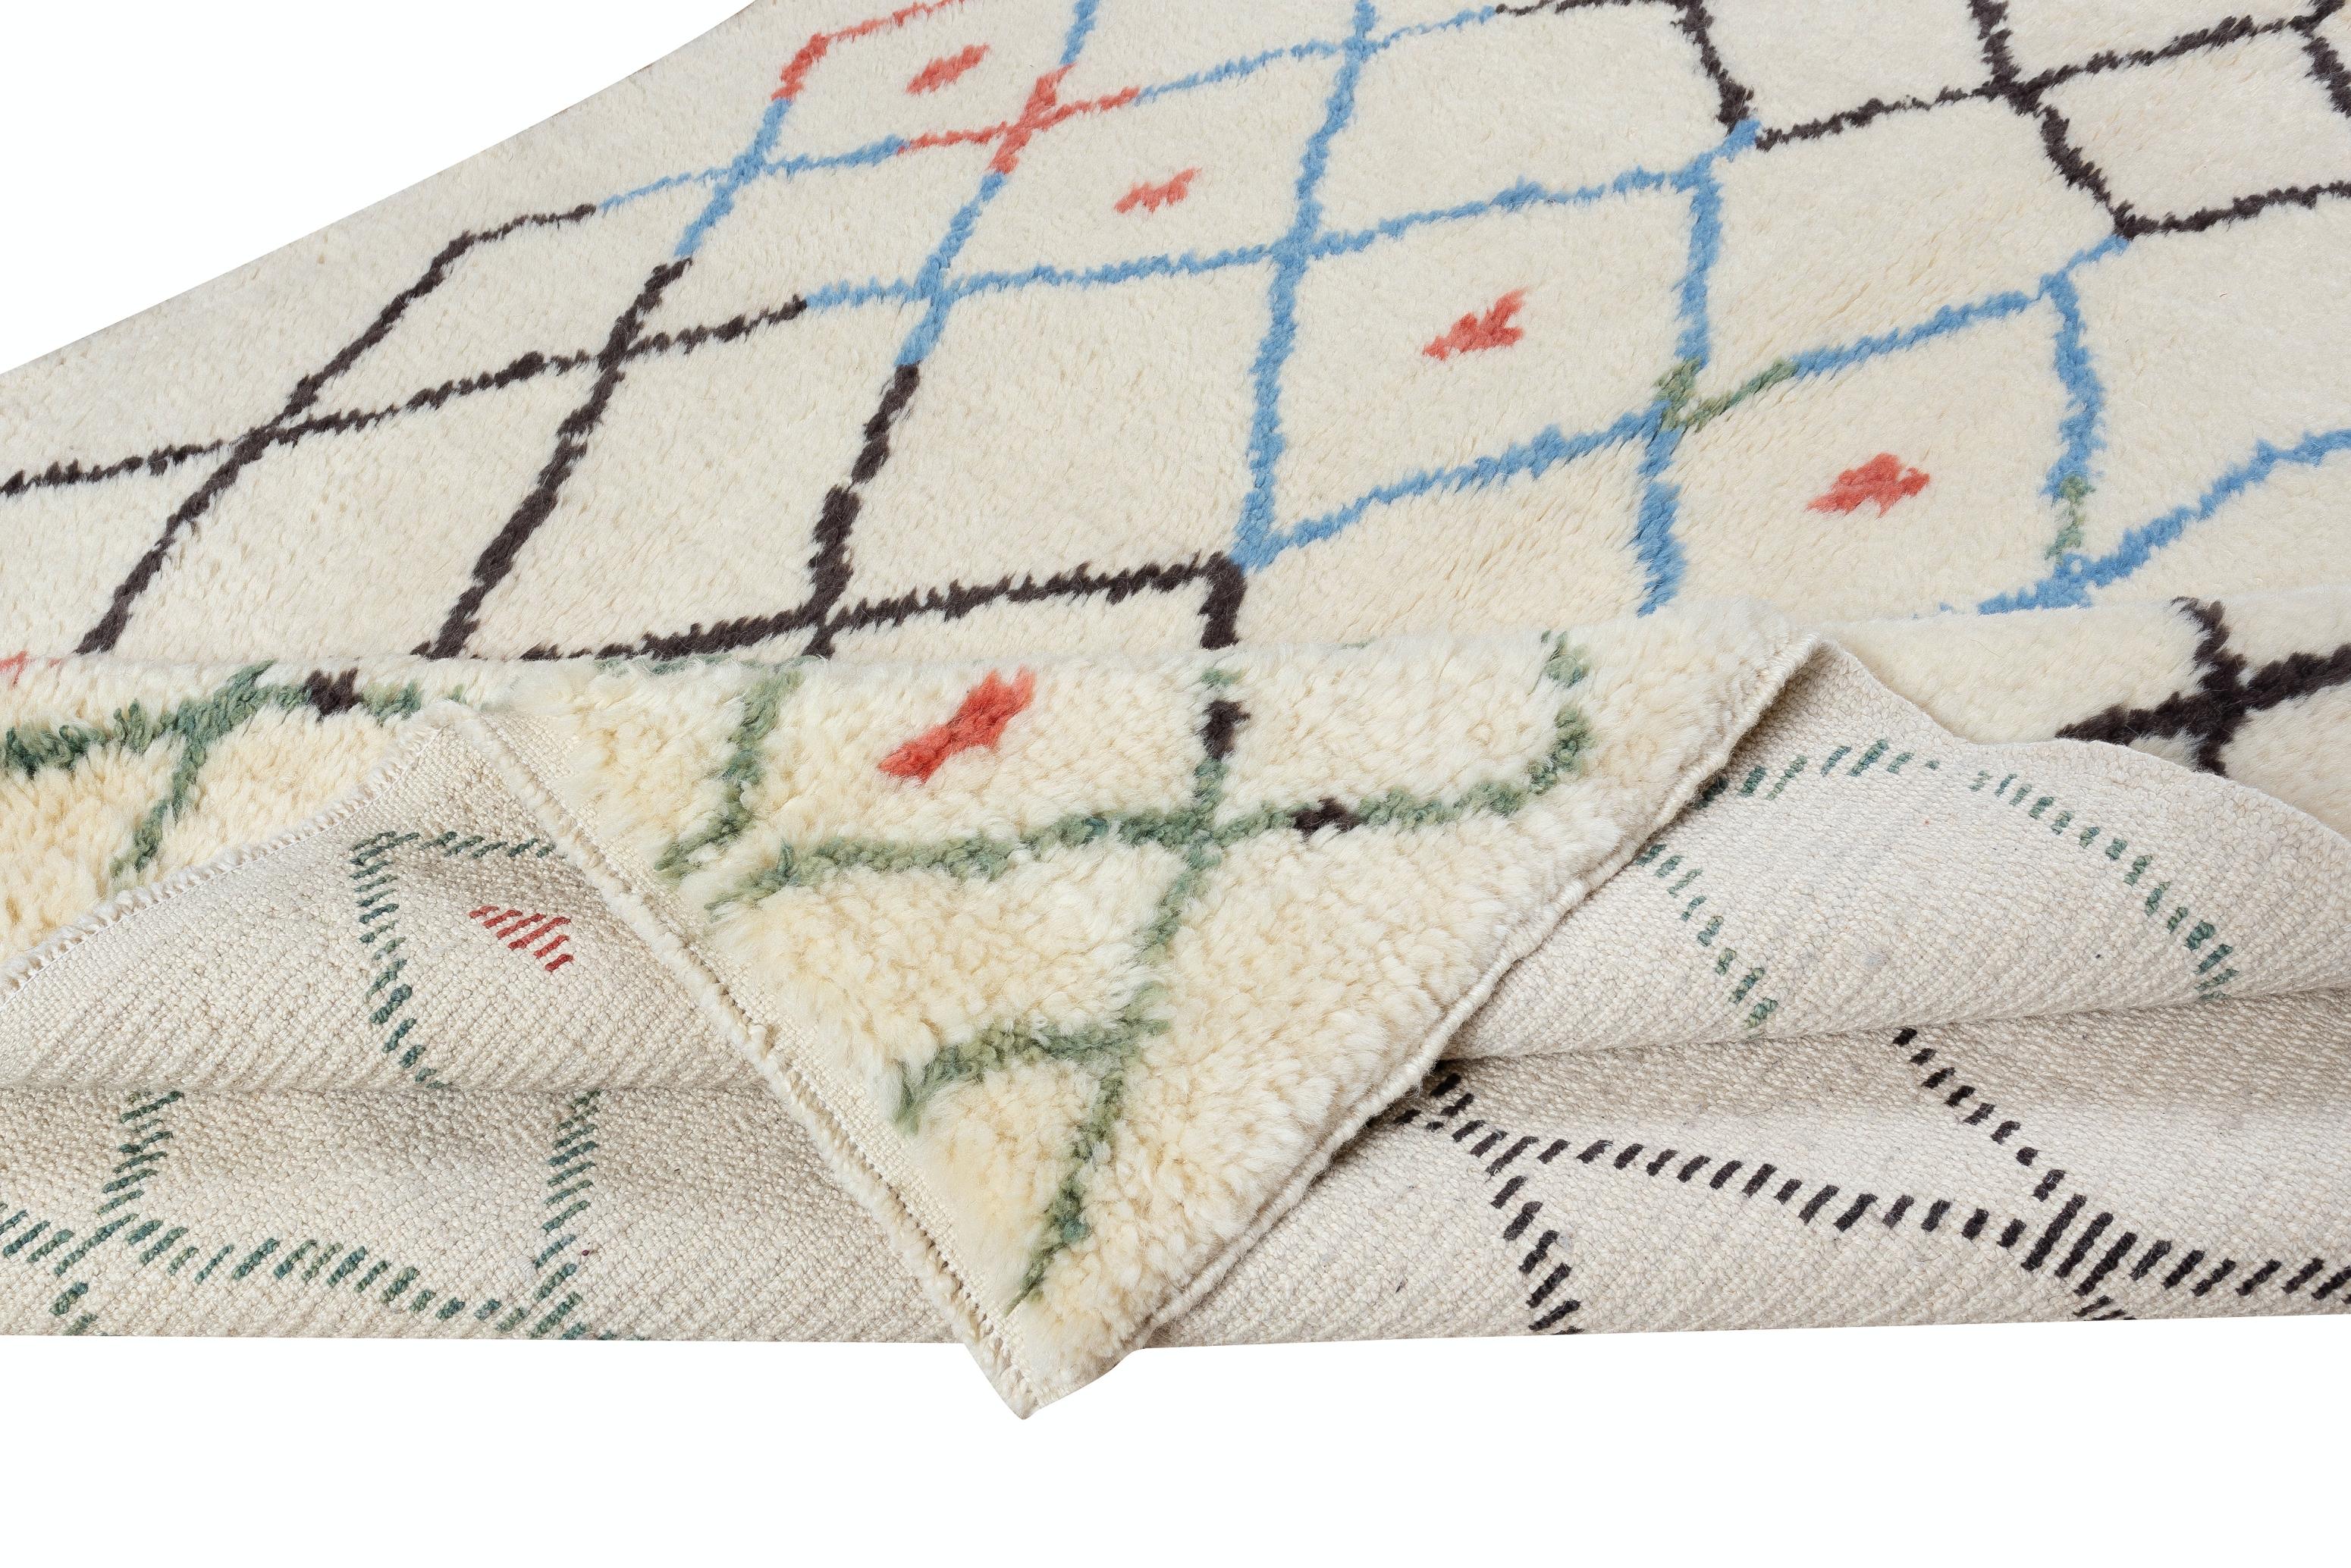 Ein moderner handgeknüpfter marokkanischer Teppich aus pflanzengefärbter Schafwolle. 
Weicher, komfortabler Flor, ideal für Familien mit Kindern.
Wir können innerhalb von 3 bis 5 Wochen ein neues Exemplar in jeder Größe, Florhöhe, Farbkombination